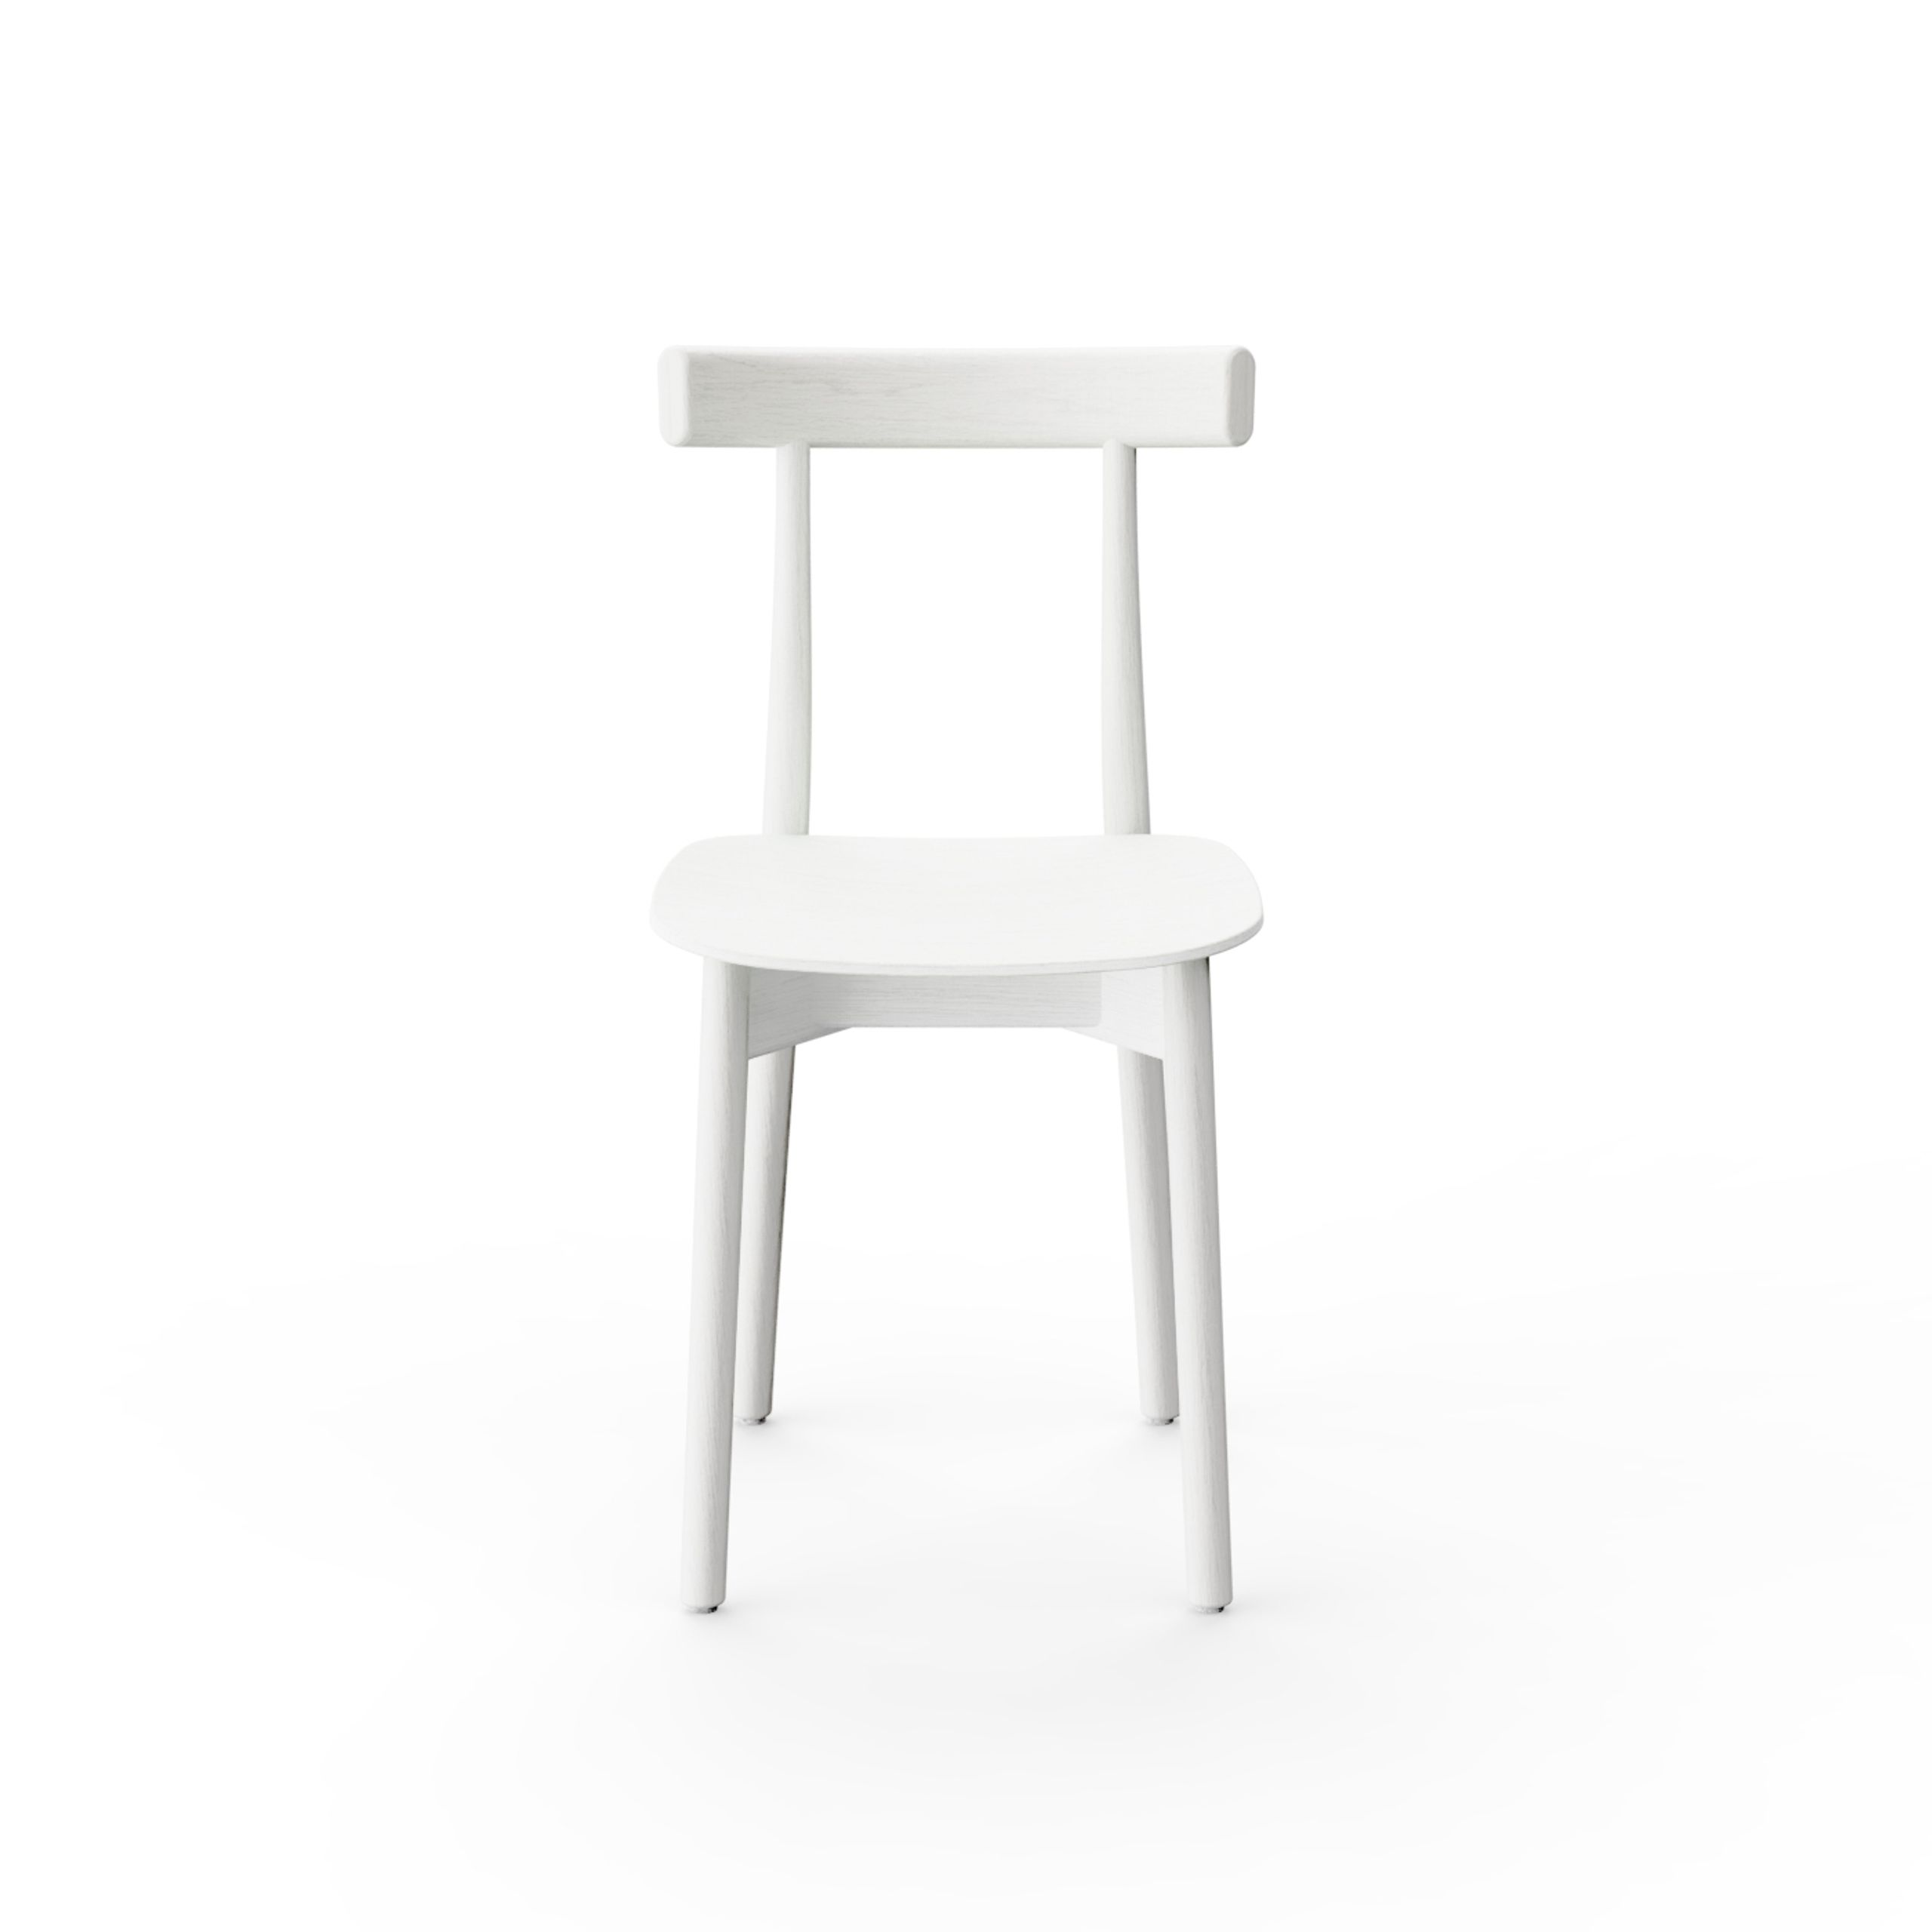 NINE - Esstischstuhl - Skinny Wooden Chair - White